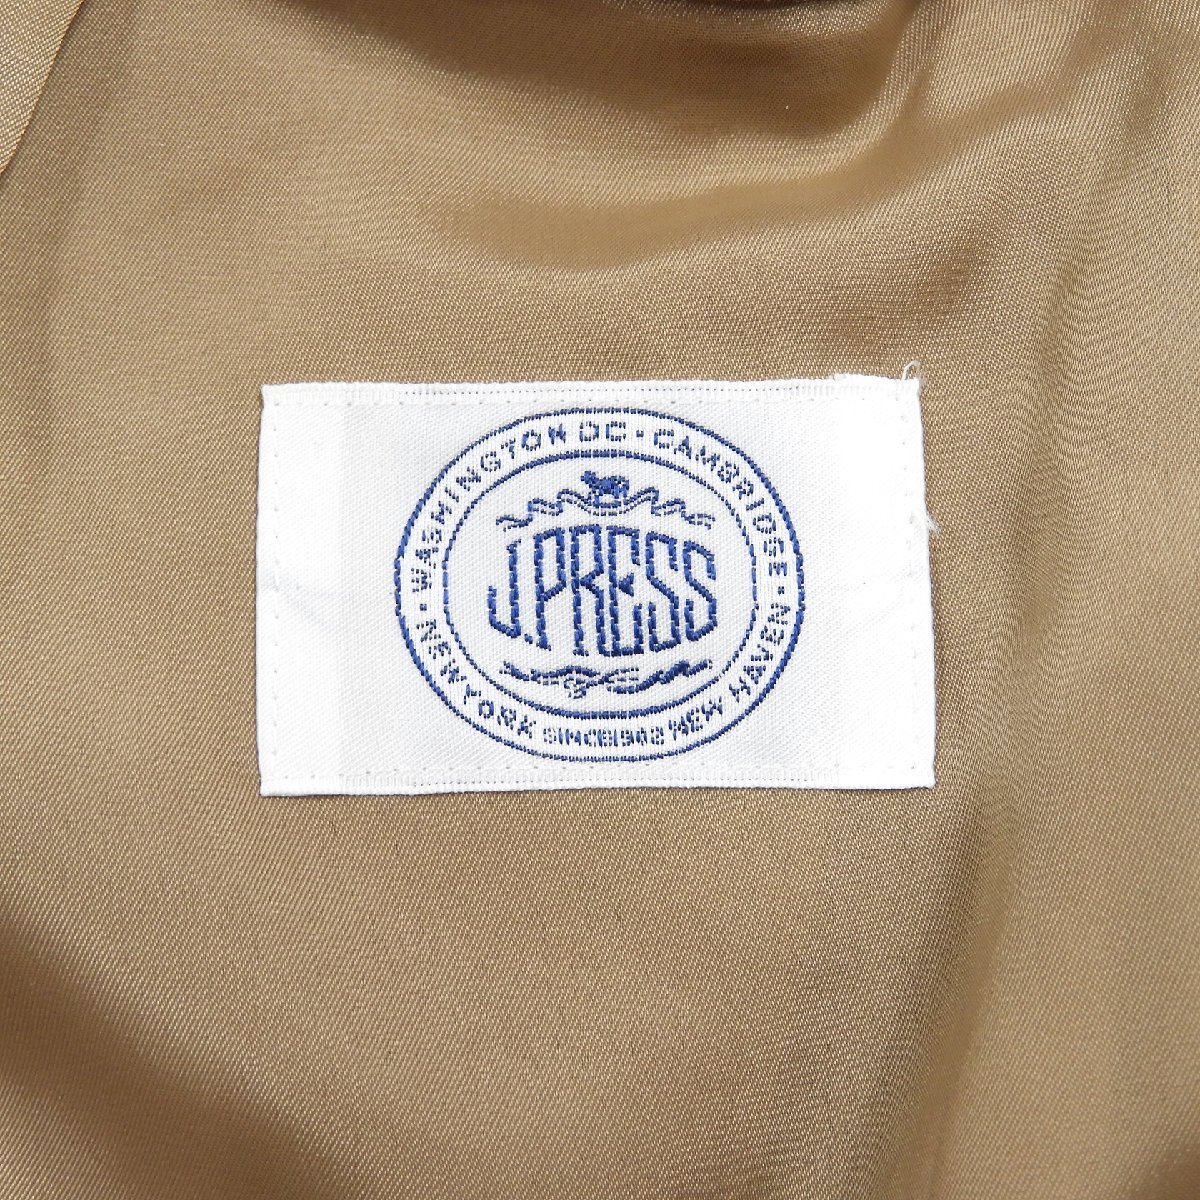 J.PRESS J Press wool slacks pants beige Size 11 #17029 J Press beautiful . trad casual 